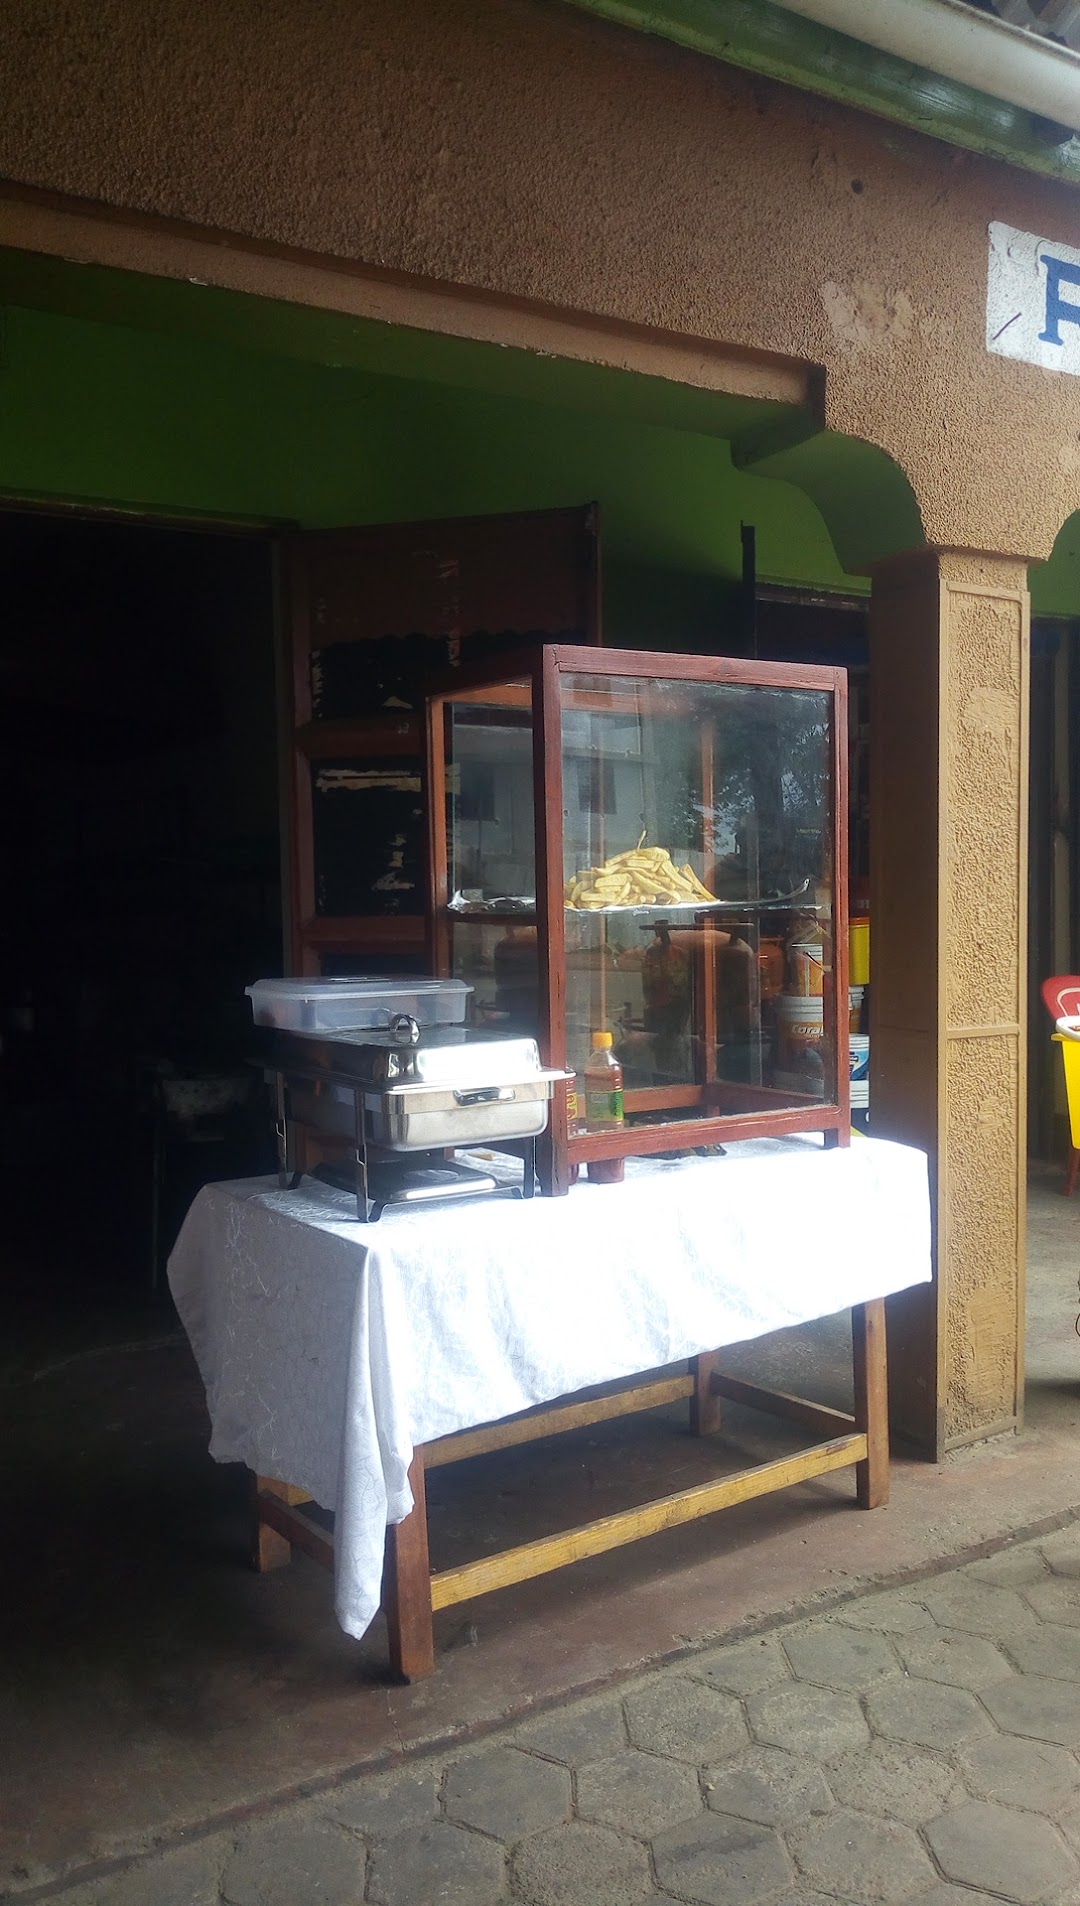 Arusha Local food restaurant